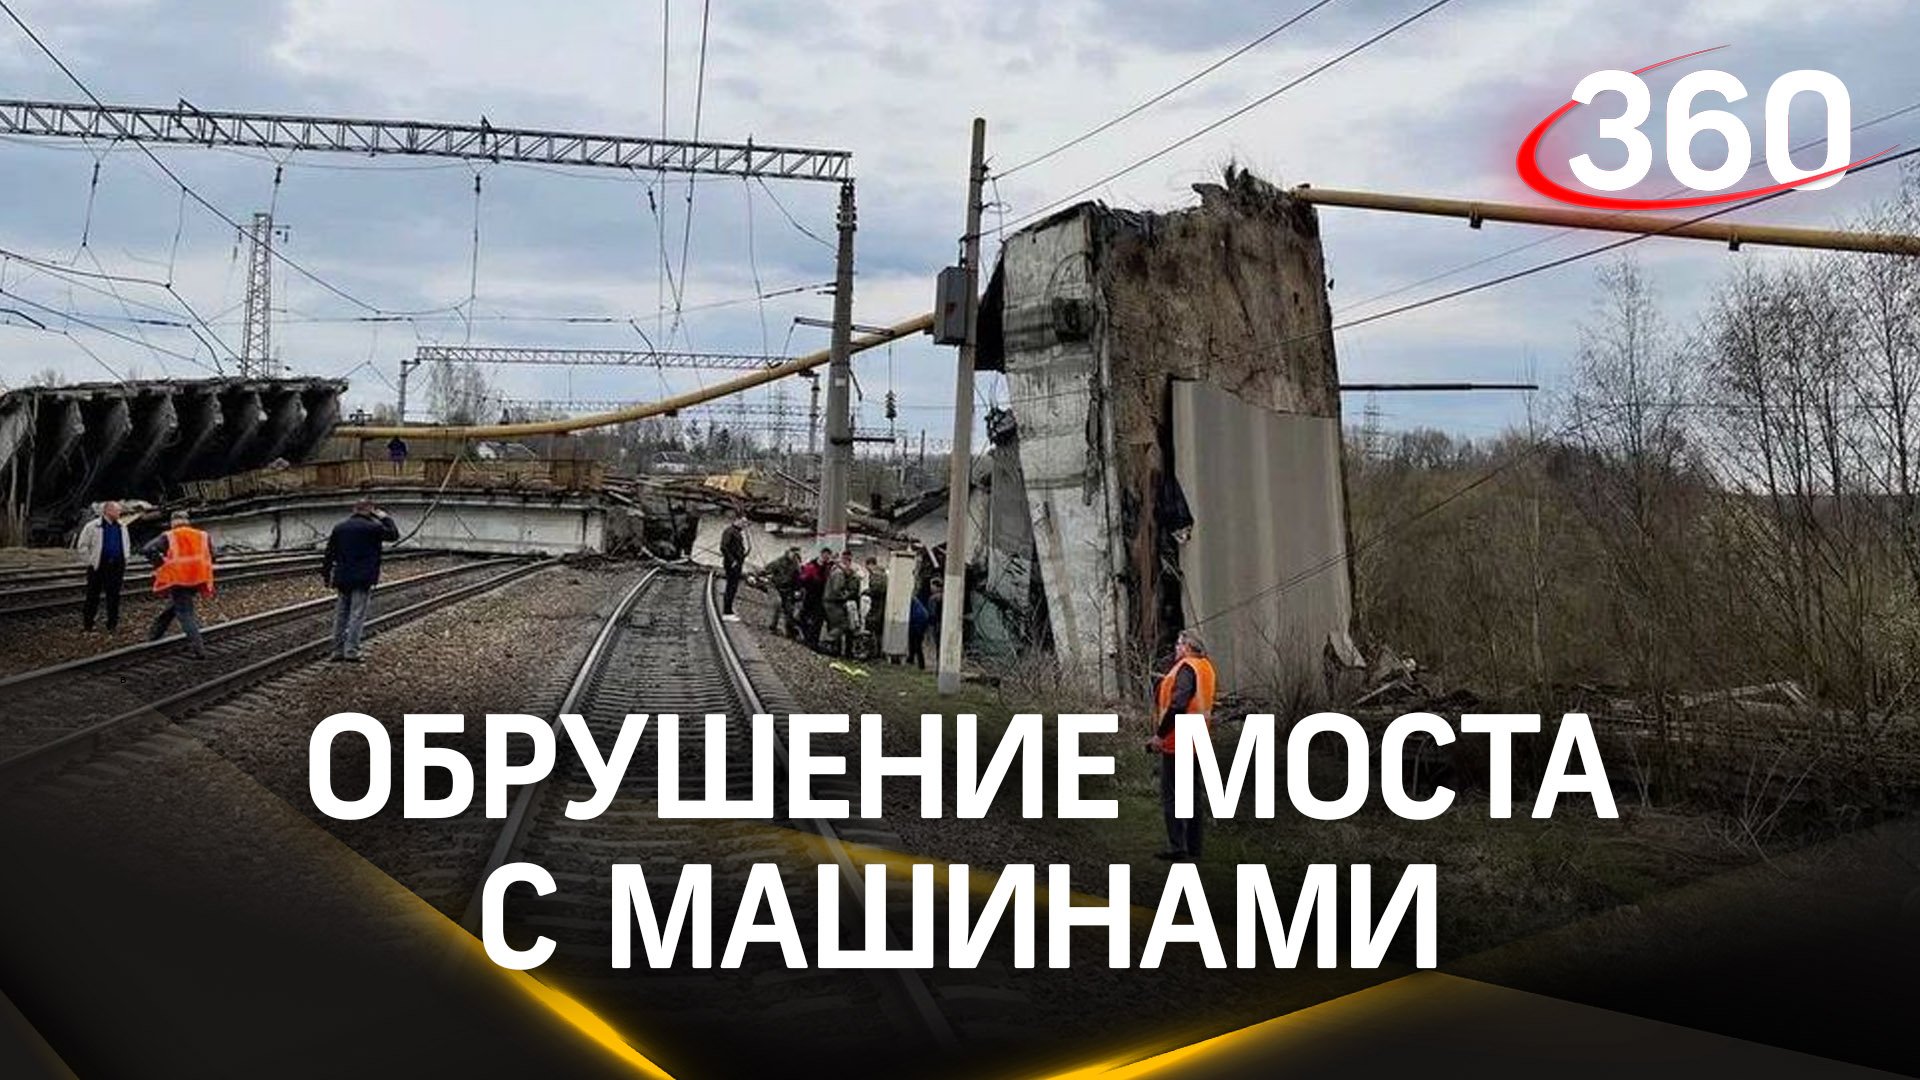 Автомобильный мост обрушился в Вязьме Смоленской области. В этот момент там находились две машины